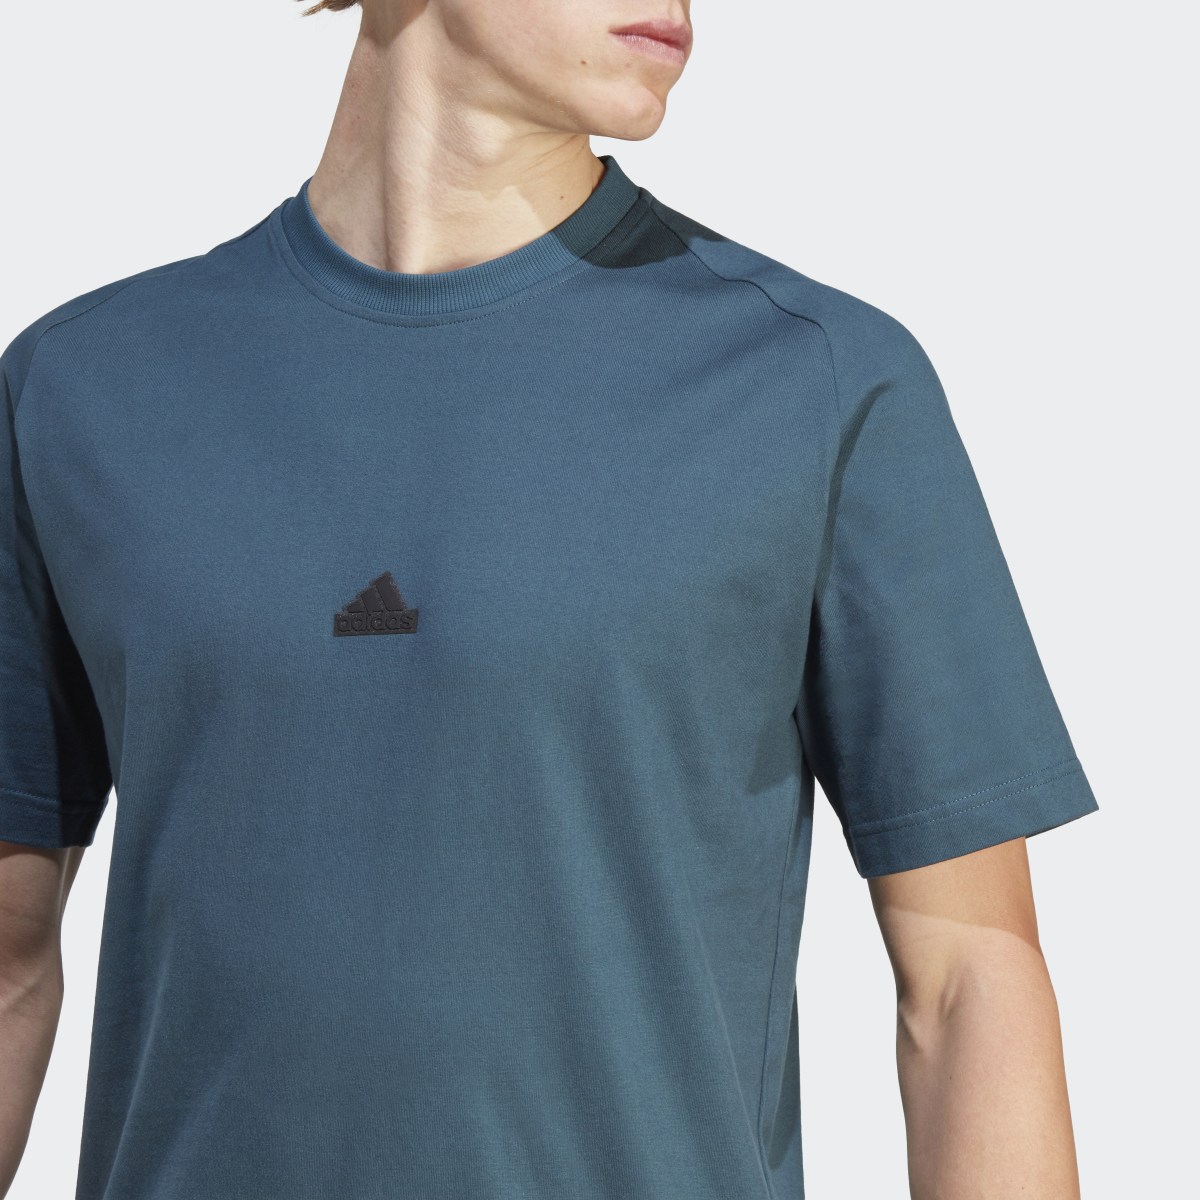 Adidas Z.N.E. T-Shirt. 6